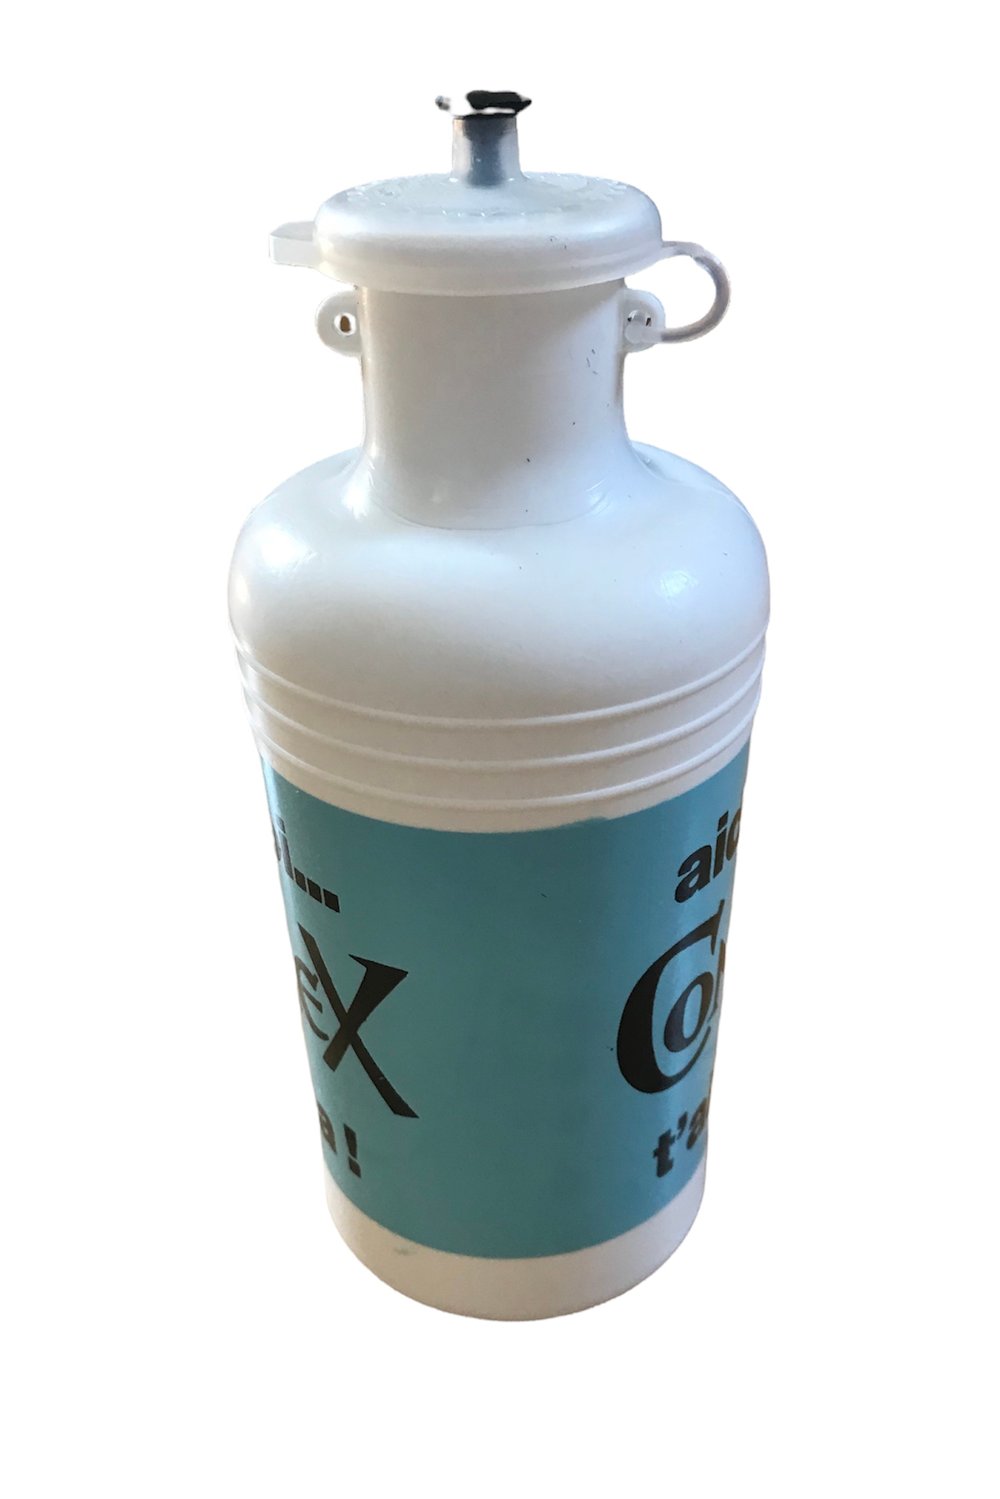 1975 - Tour de France / Contrex water bottle